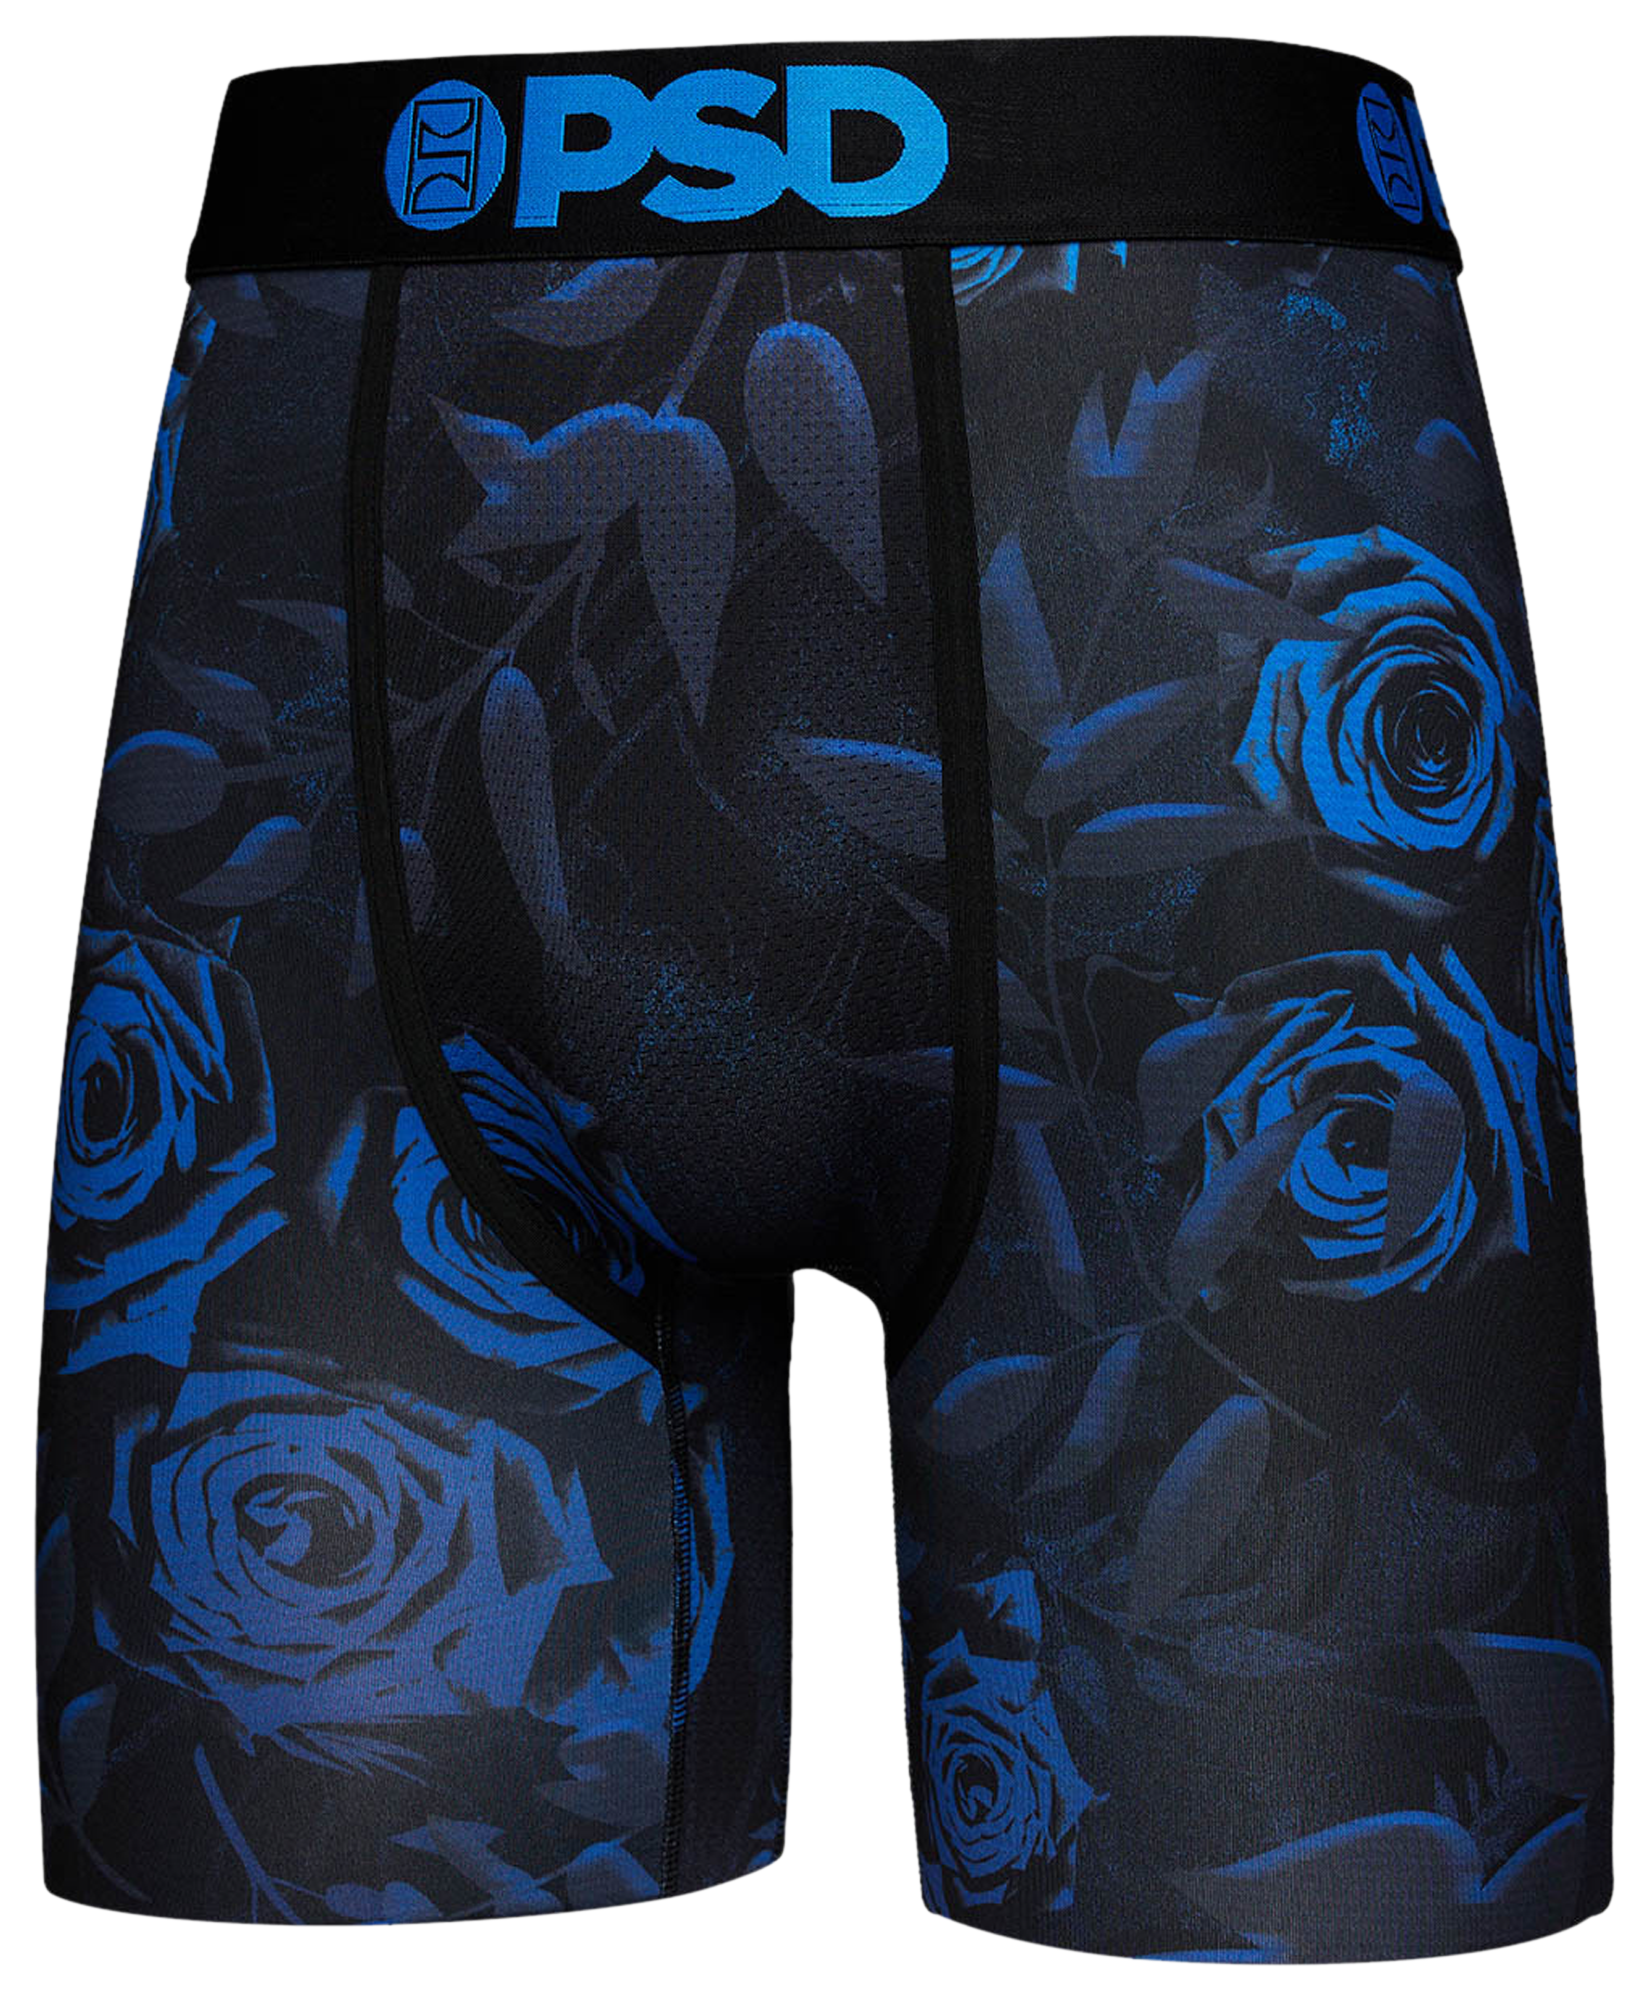 PSD Underwear - FROST BLOOM - Black/Blue